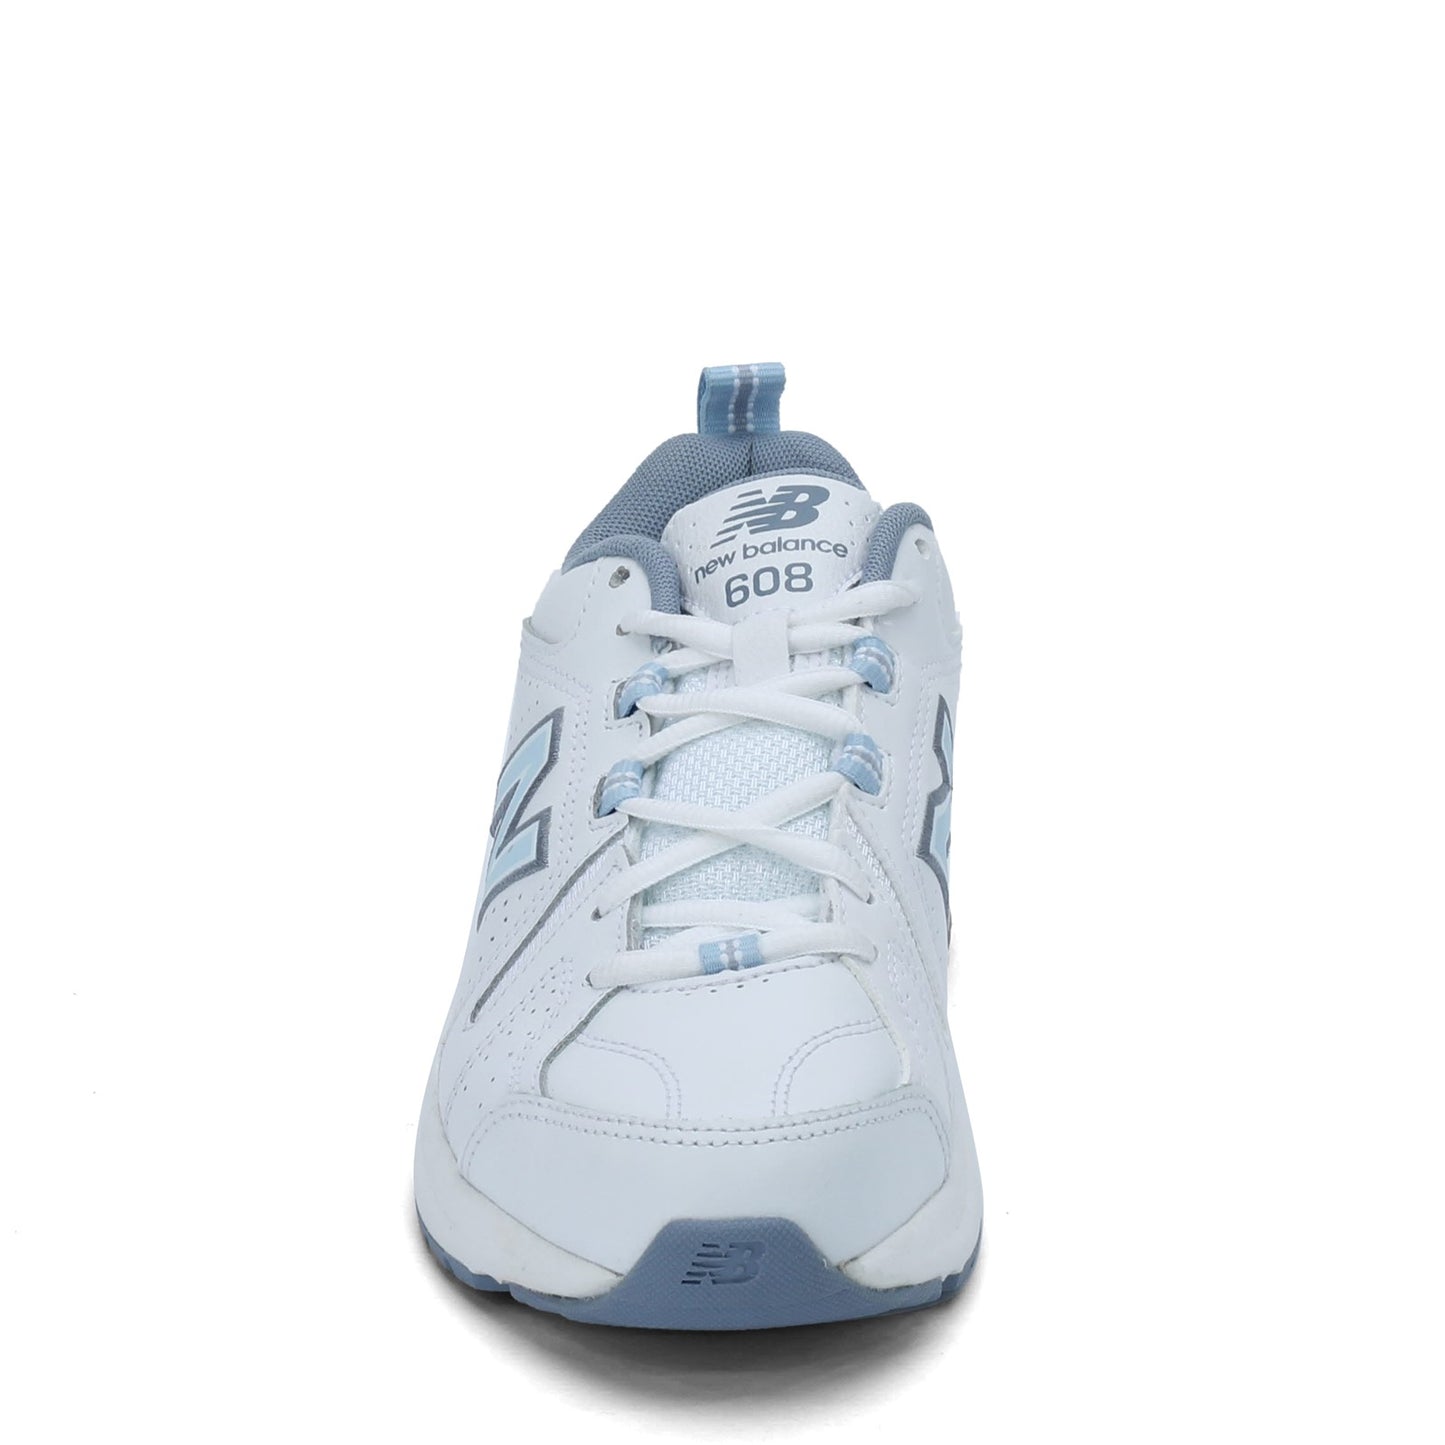 Peltz Shoes  Women's New Balance 608V5 Crosstraining Sneaker WHITE BLUE WX608WB5